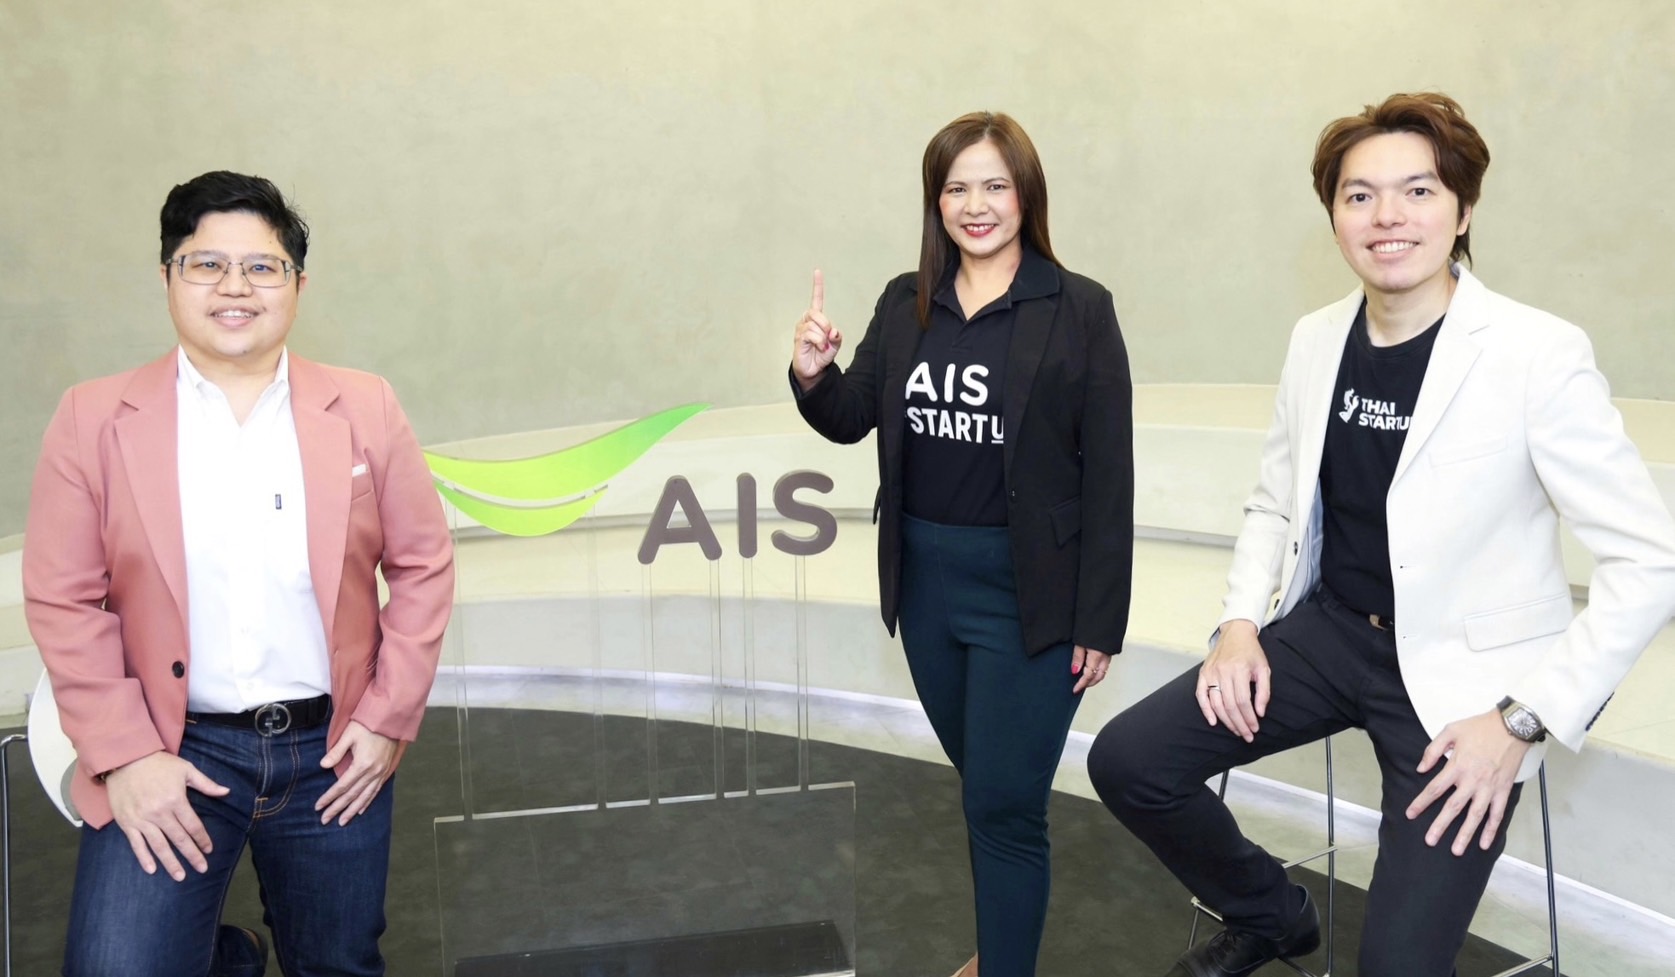 AIS The StartUp ชี้ถึงเวลาสตาร์ทอัพไทยอัพสกิล การทำธุรกิจอย่างยั่งยืน และวิเคราะห์ความเสี่ยง บนหลัก ESG